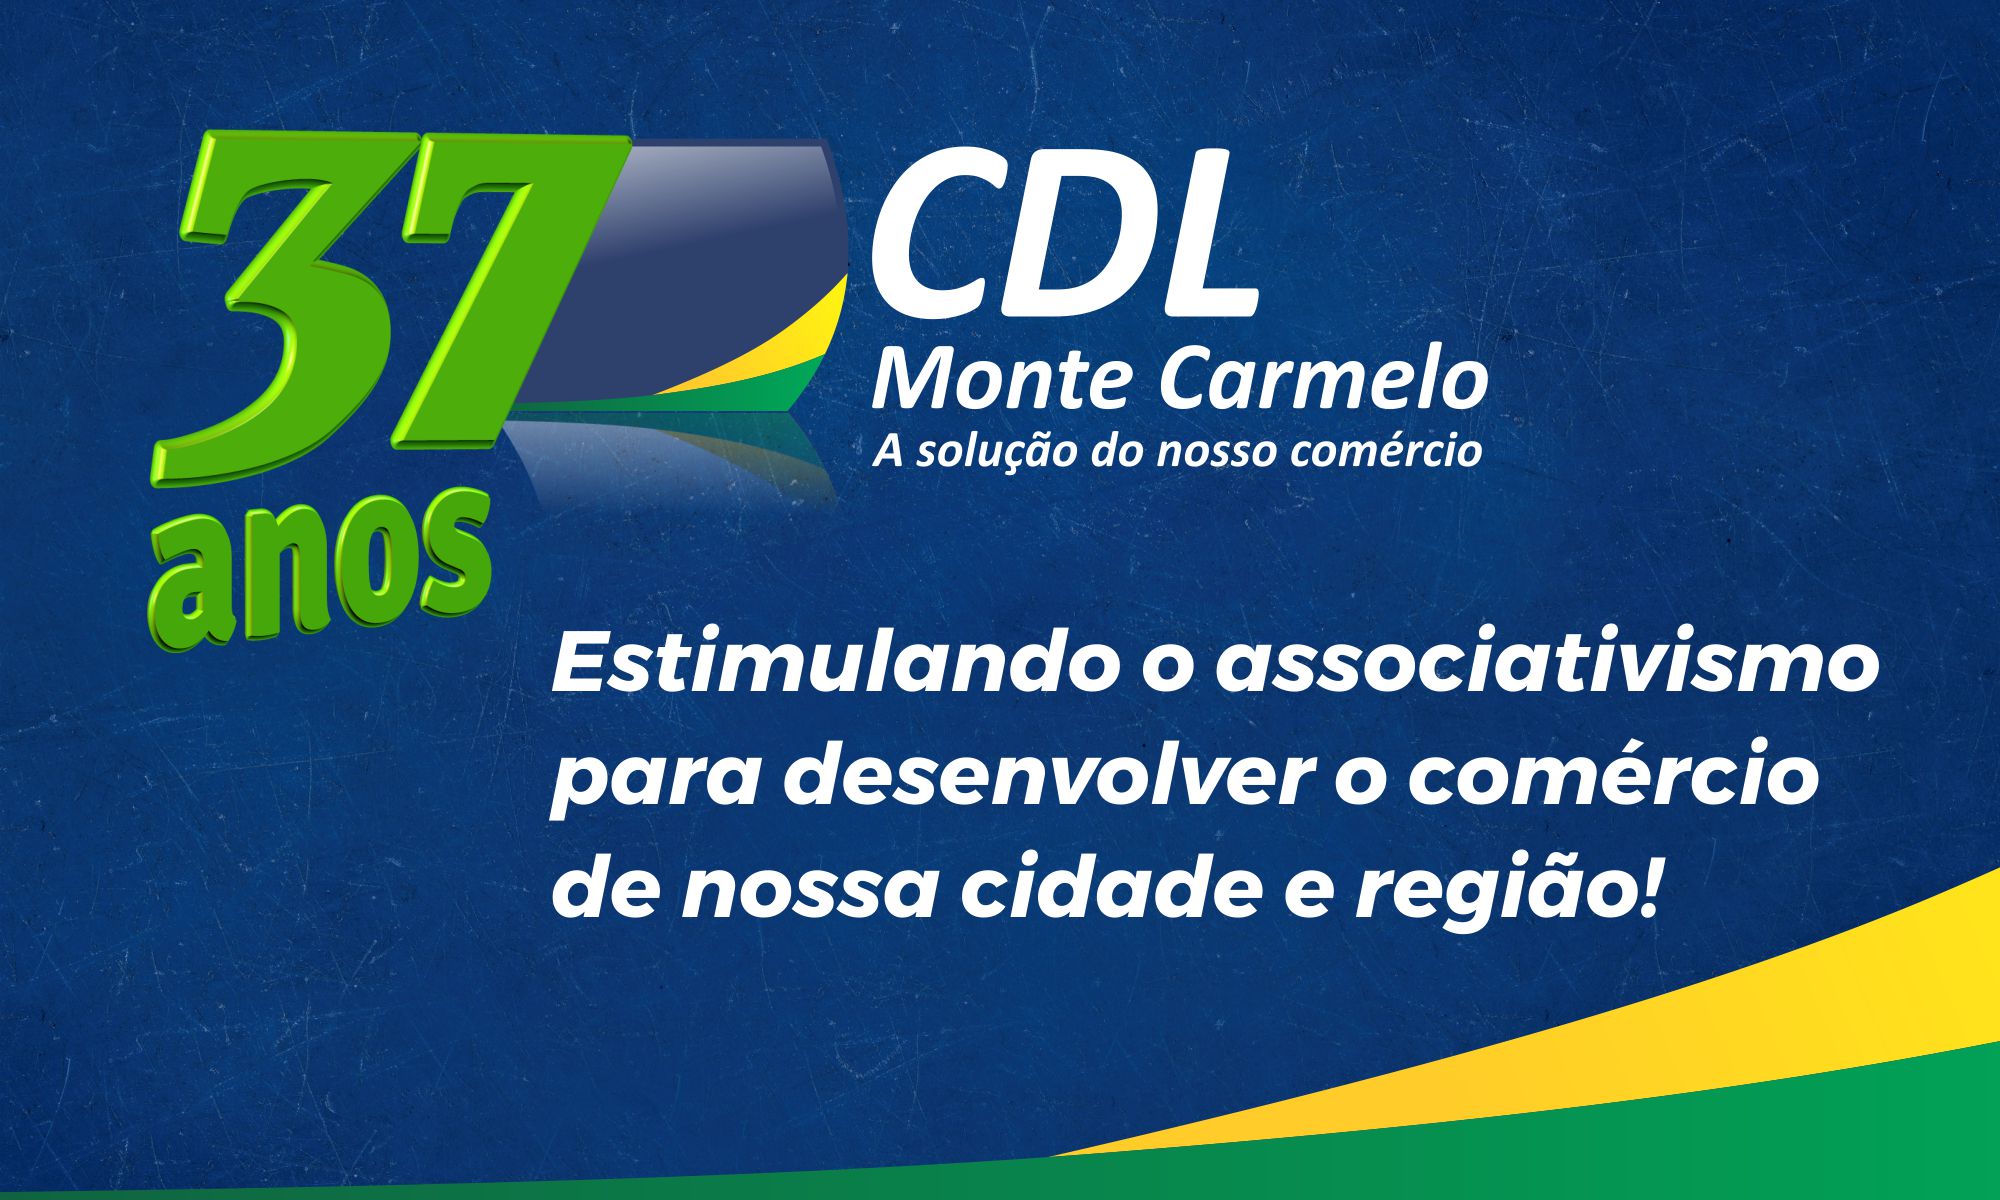 Hoje a CDL Monte Carmelo comemora seu aniversário de 37 anos!